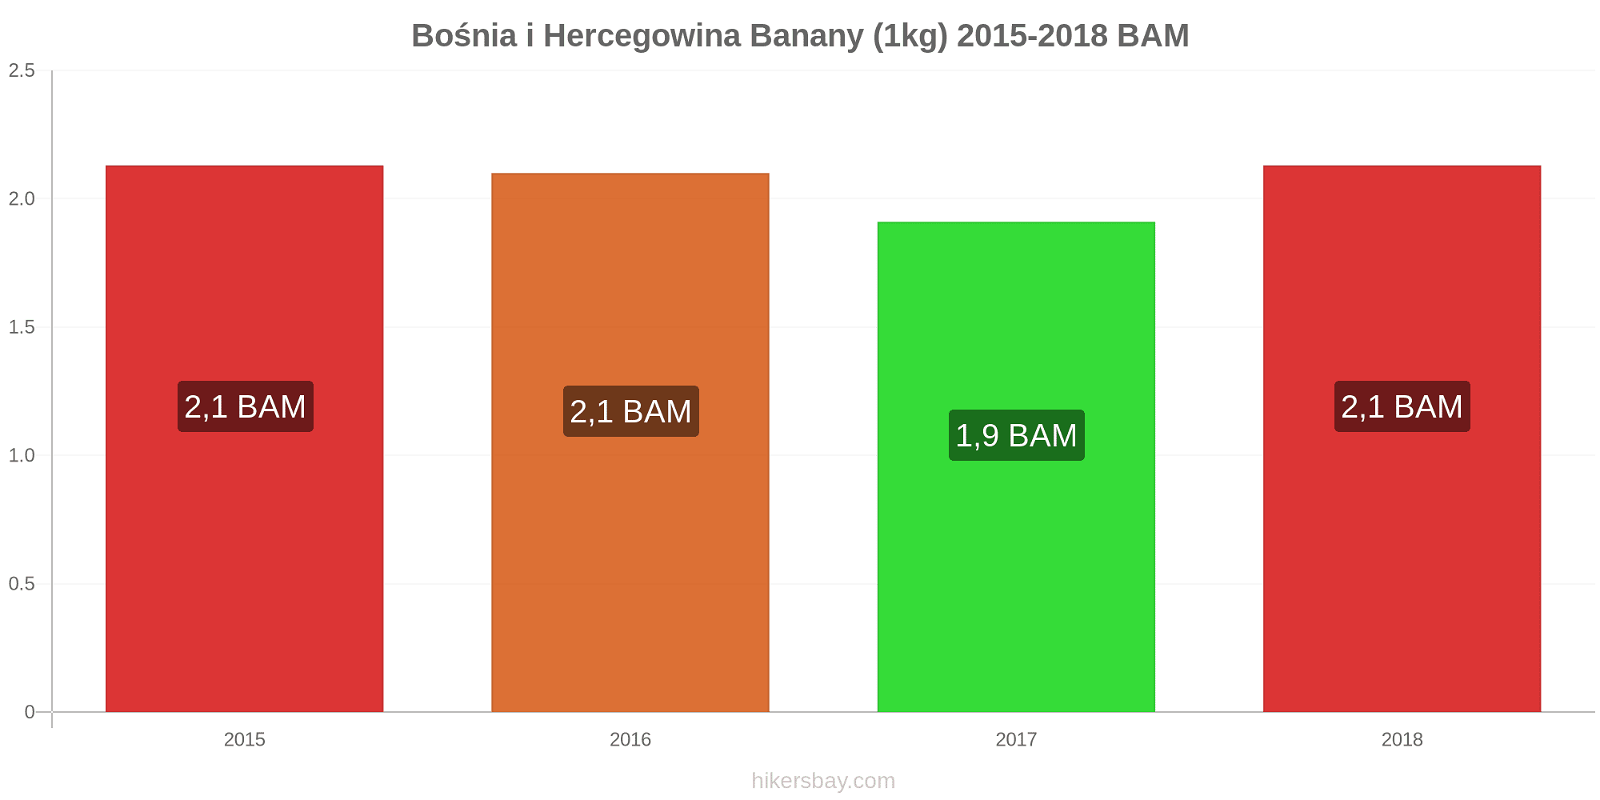 Bośnia i Hercegowina zmiany cen Banany (1kg) hikersbay.com